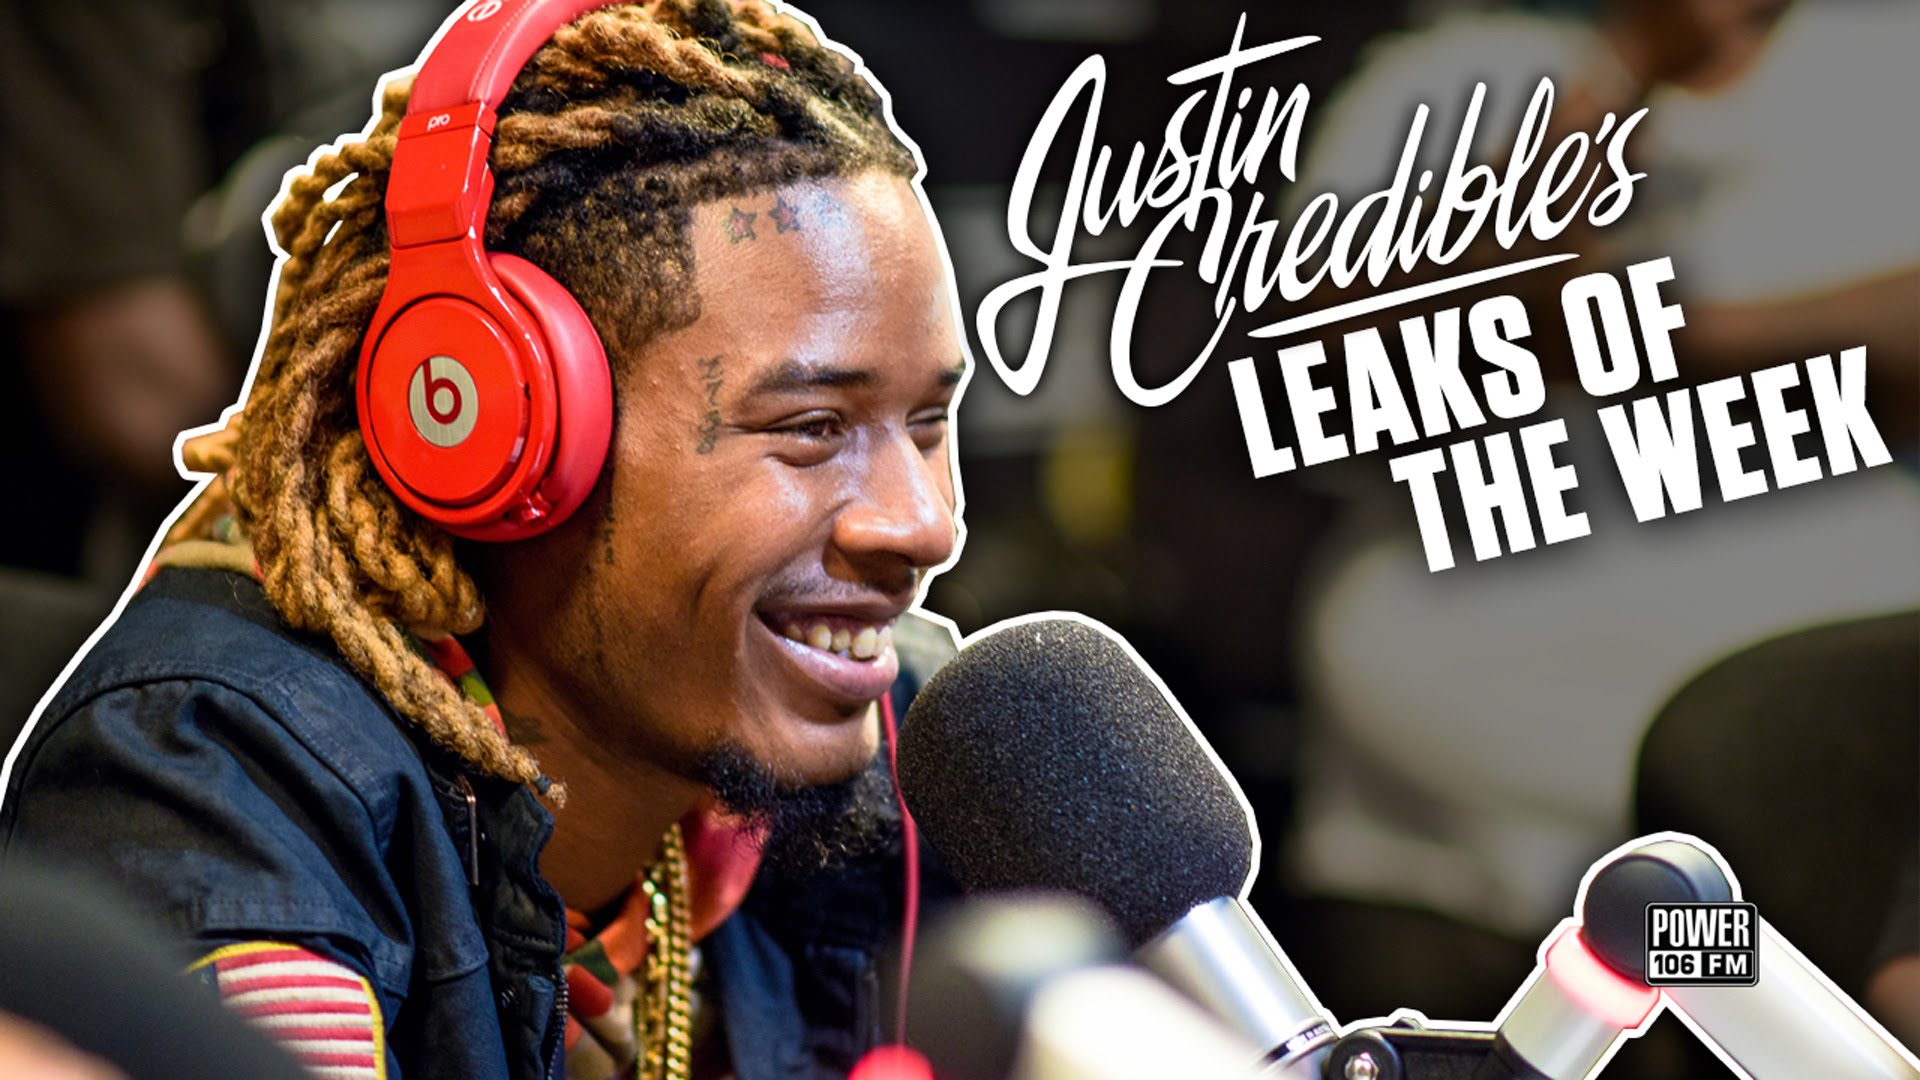 Justin Credible’s #LeaksOfTheWeek w/ Fetty Wap, Jeezy, & Bryson Tiller (Video)